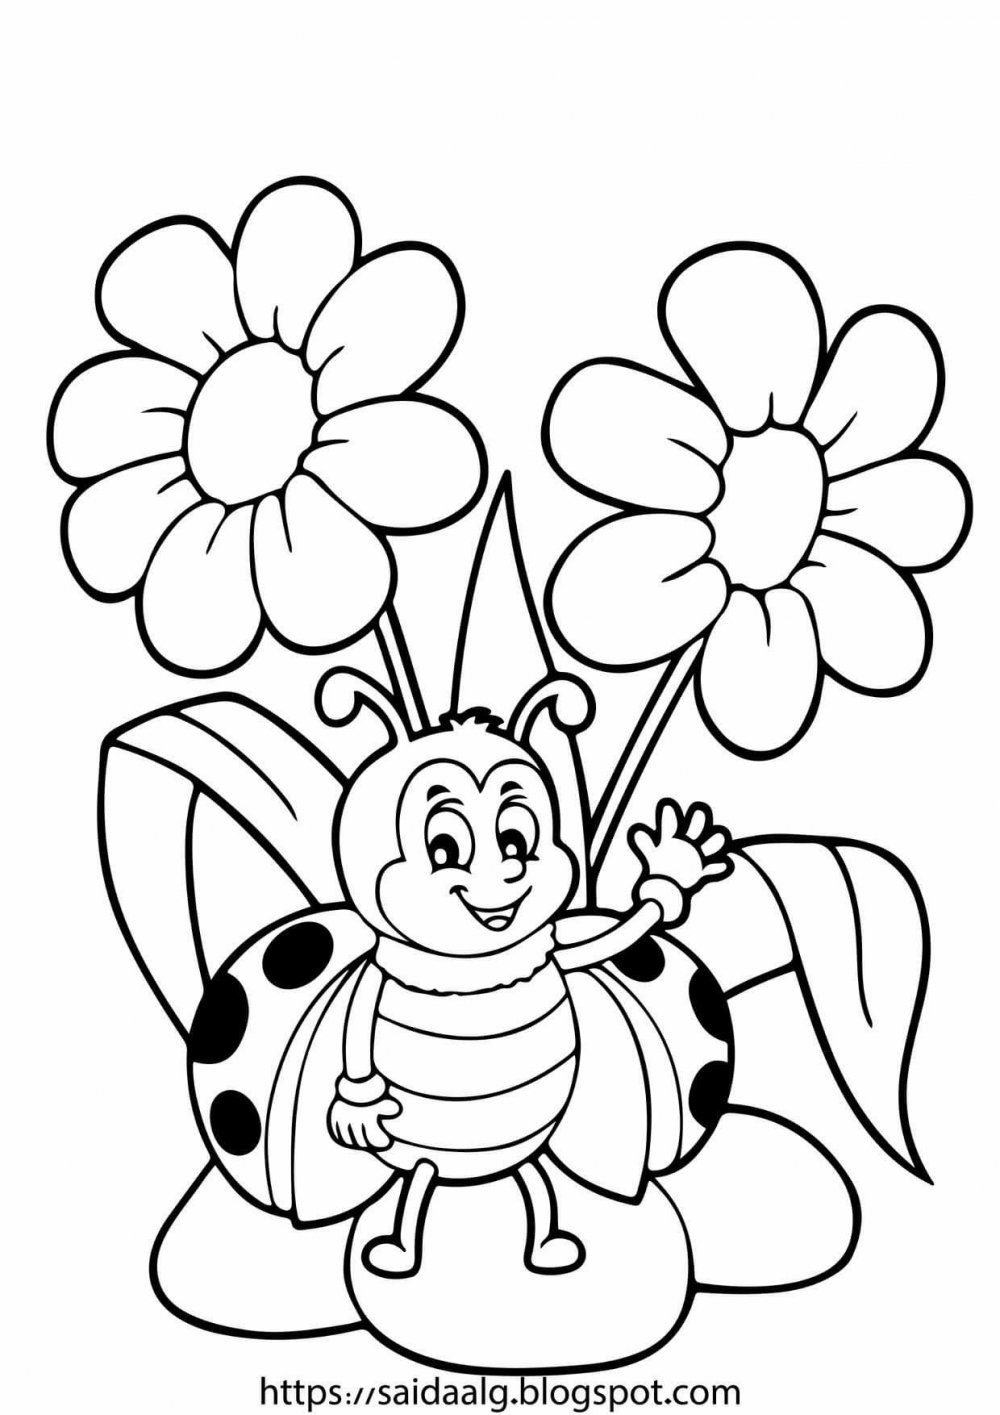 Пчелка с медом раскраска